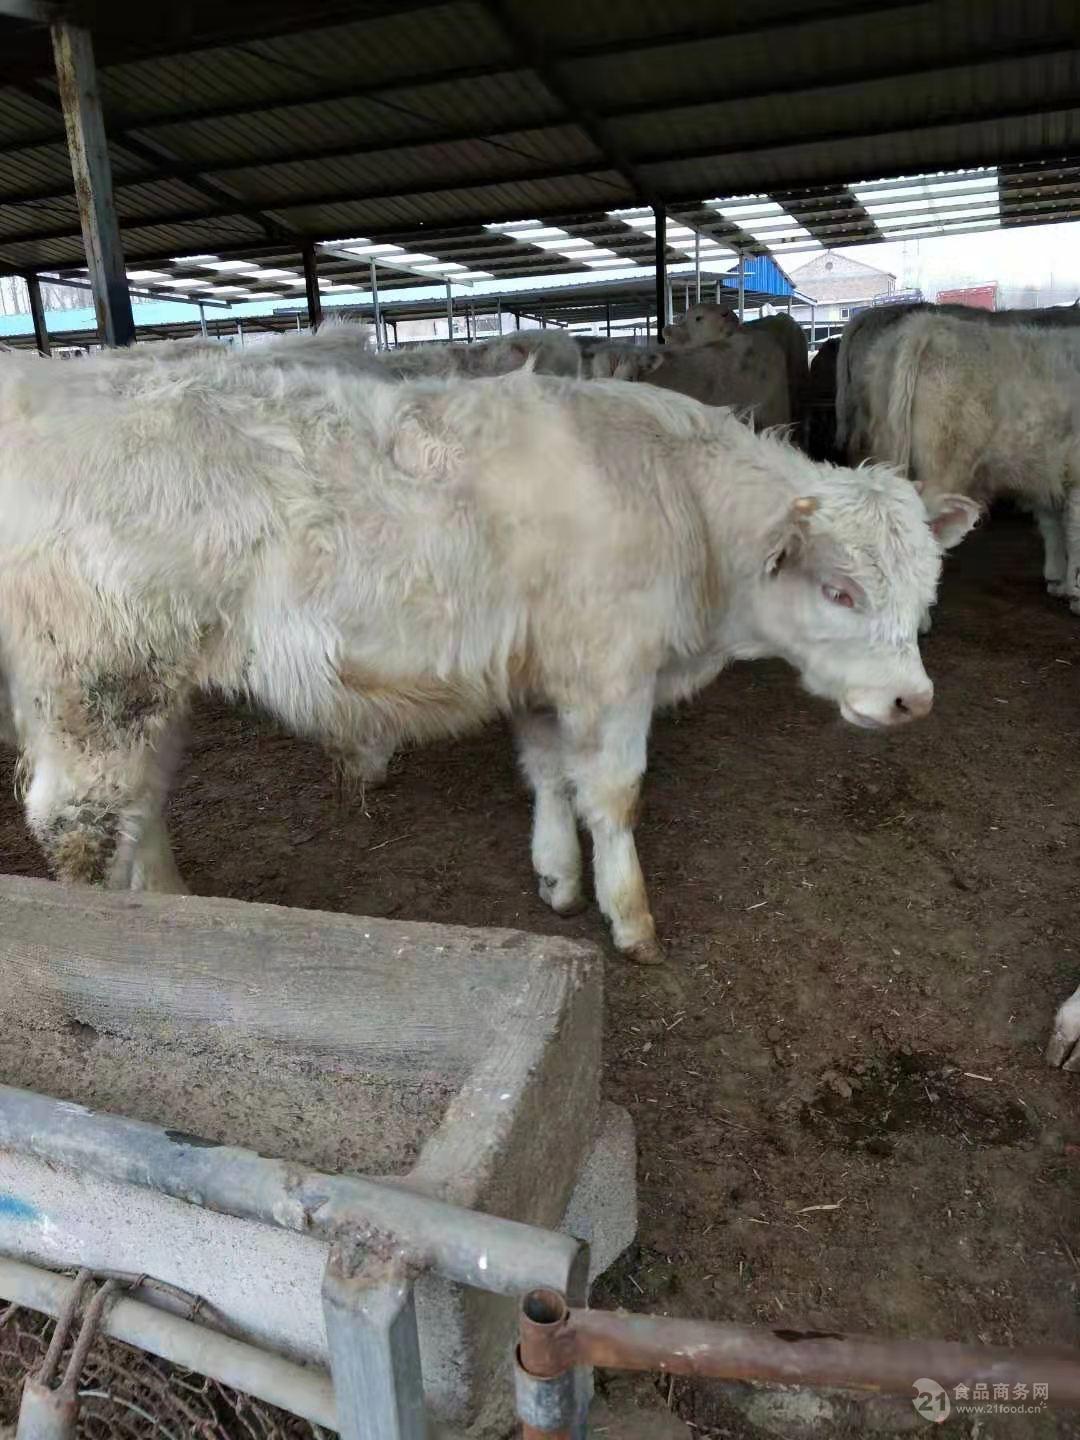 出售鲁西黄牛活体牛犊子杂交牛仔大型肉牛小幼牛活牛崽子